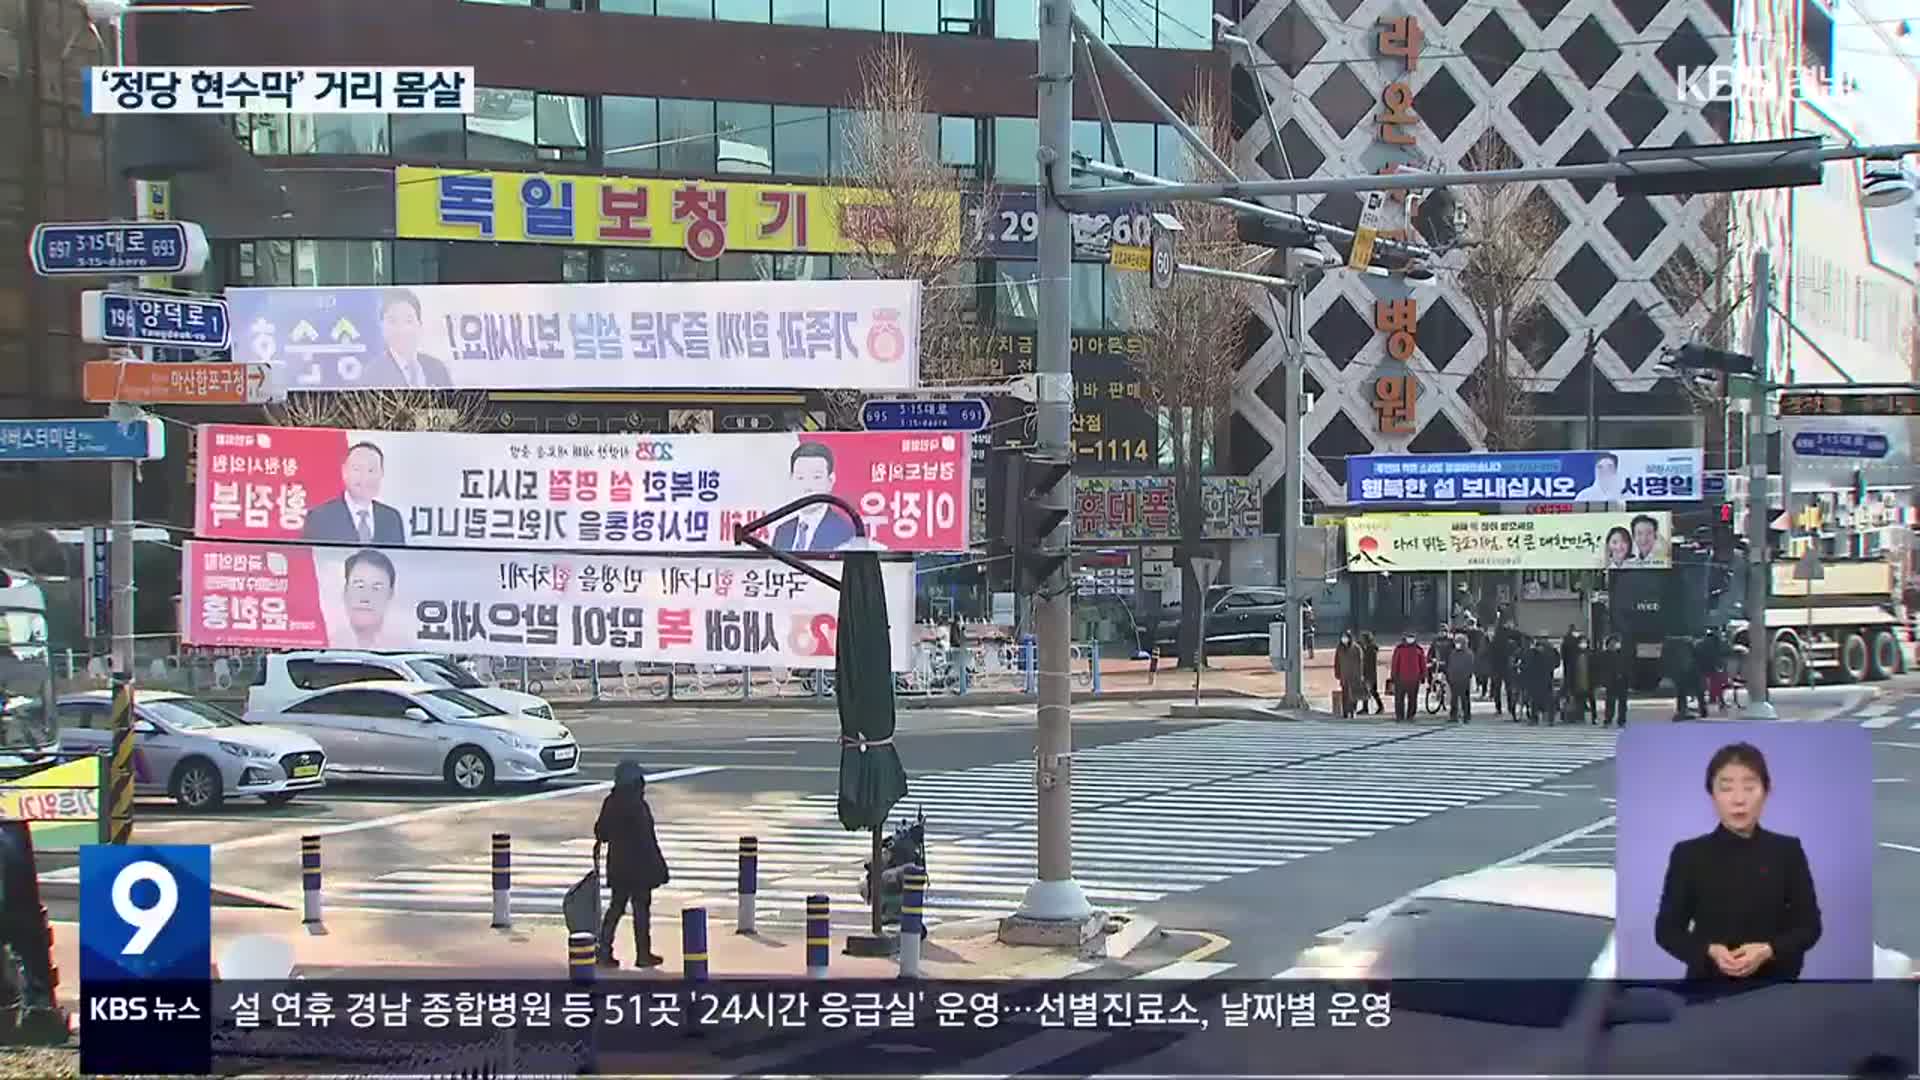 ‘정당 현수막’ 무조건 허용?…시야 막고 지침 위반까지